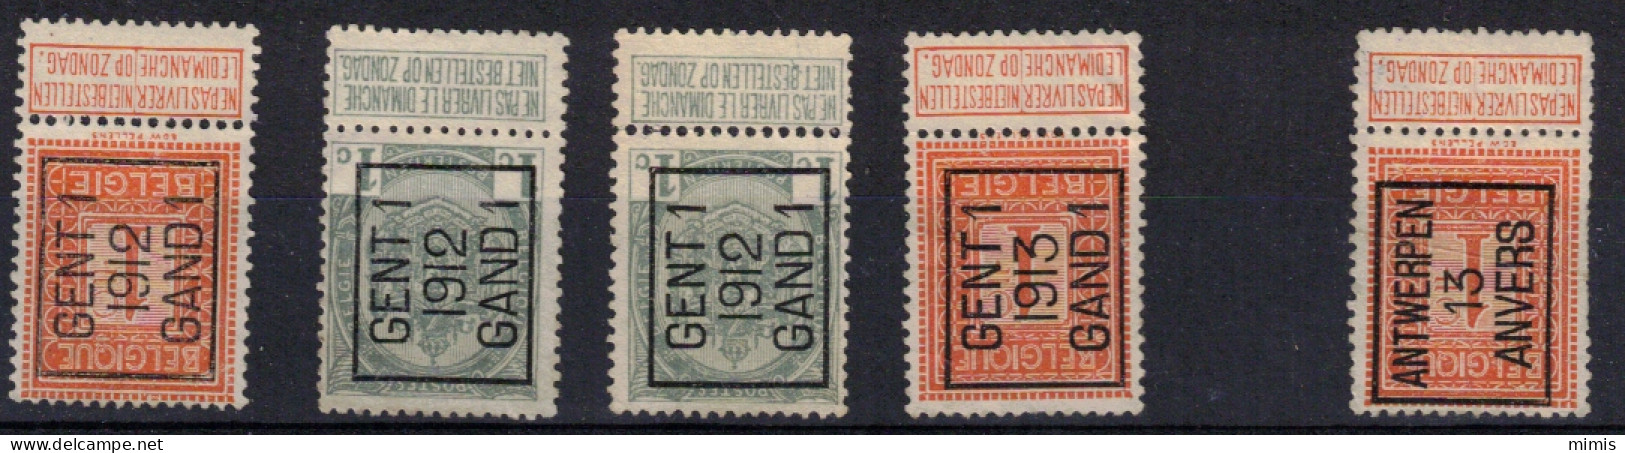 BELGIQUE  Préos    N° 53 + 108 - Typografisch 1912-14 (Cijfer-leeuw)